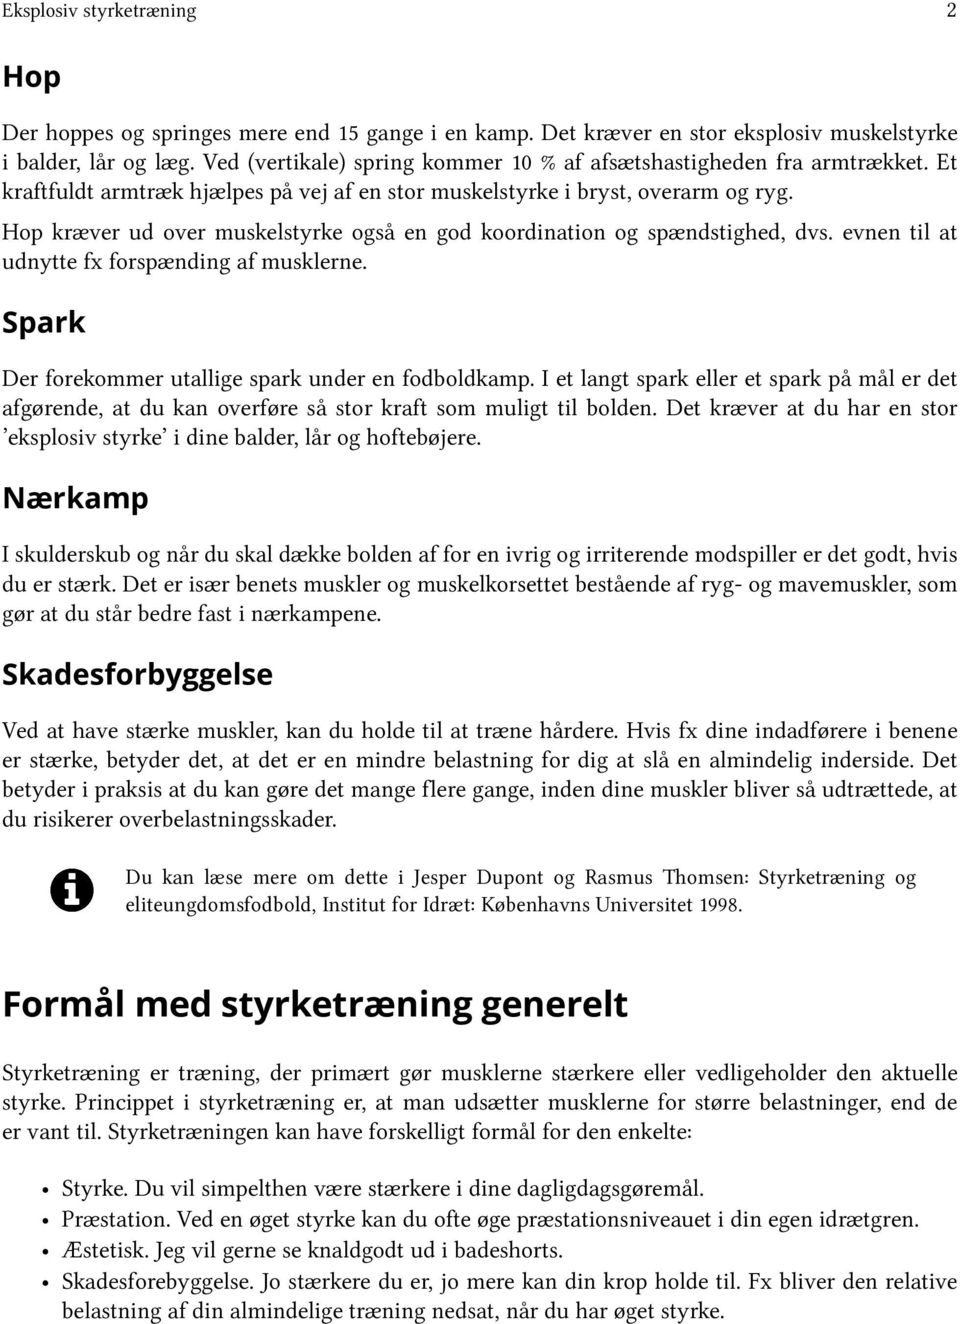 Styrketræning. Lars Olesen - PDF Gratis download